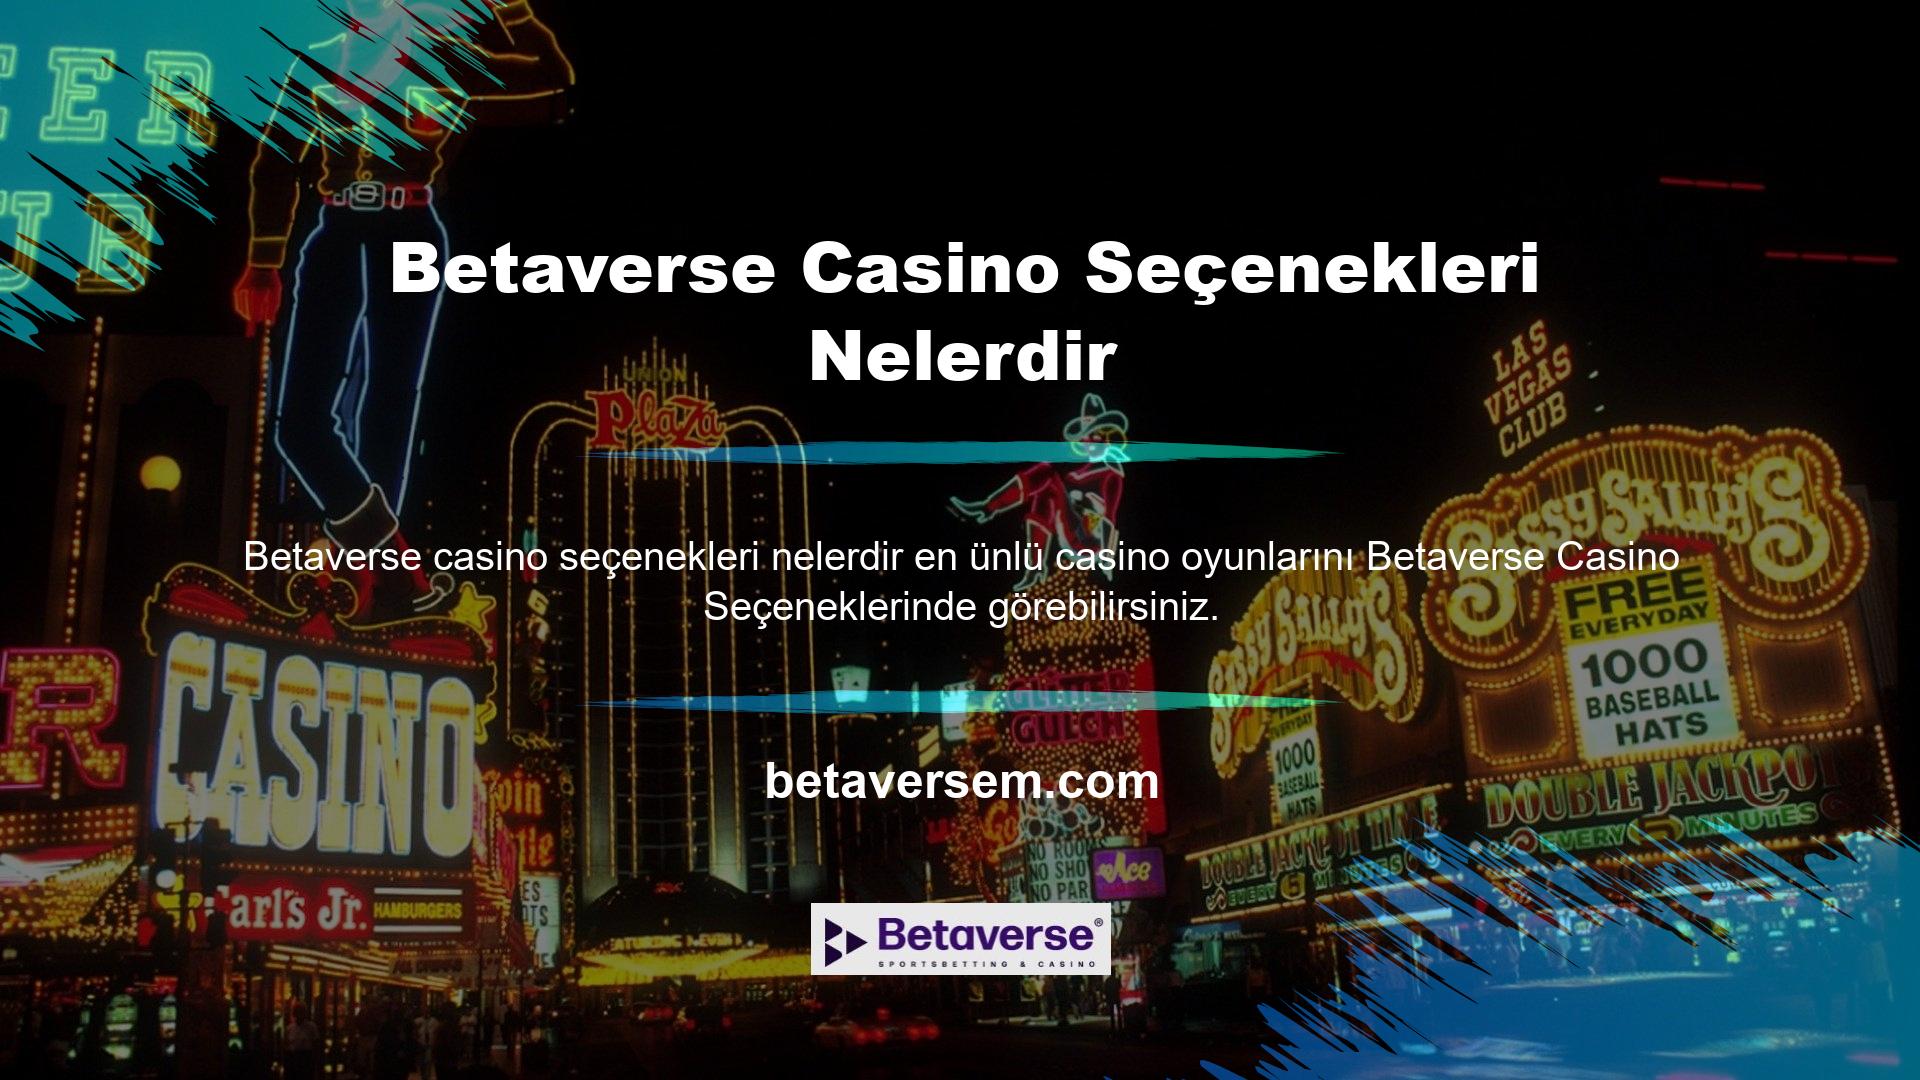 Çoğu program markası bu casino platformu sitesi için casino oyunları geliştirmektedir